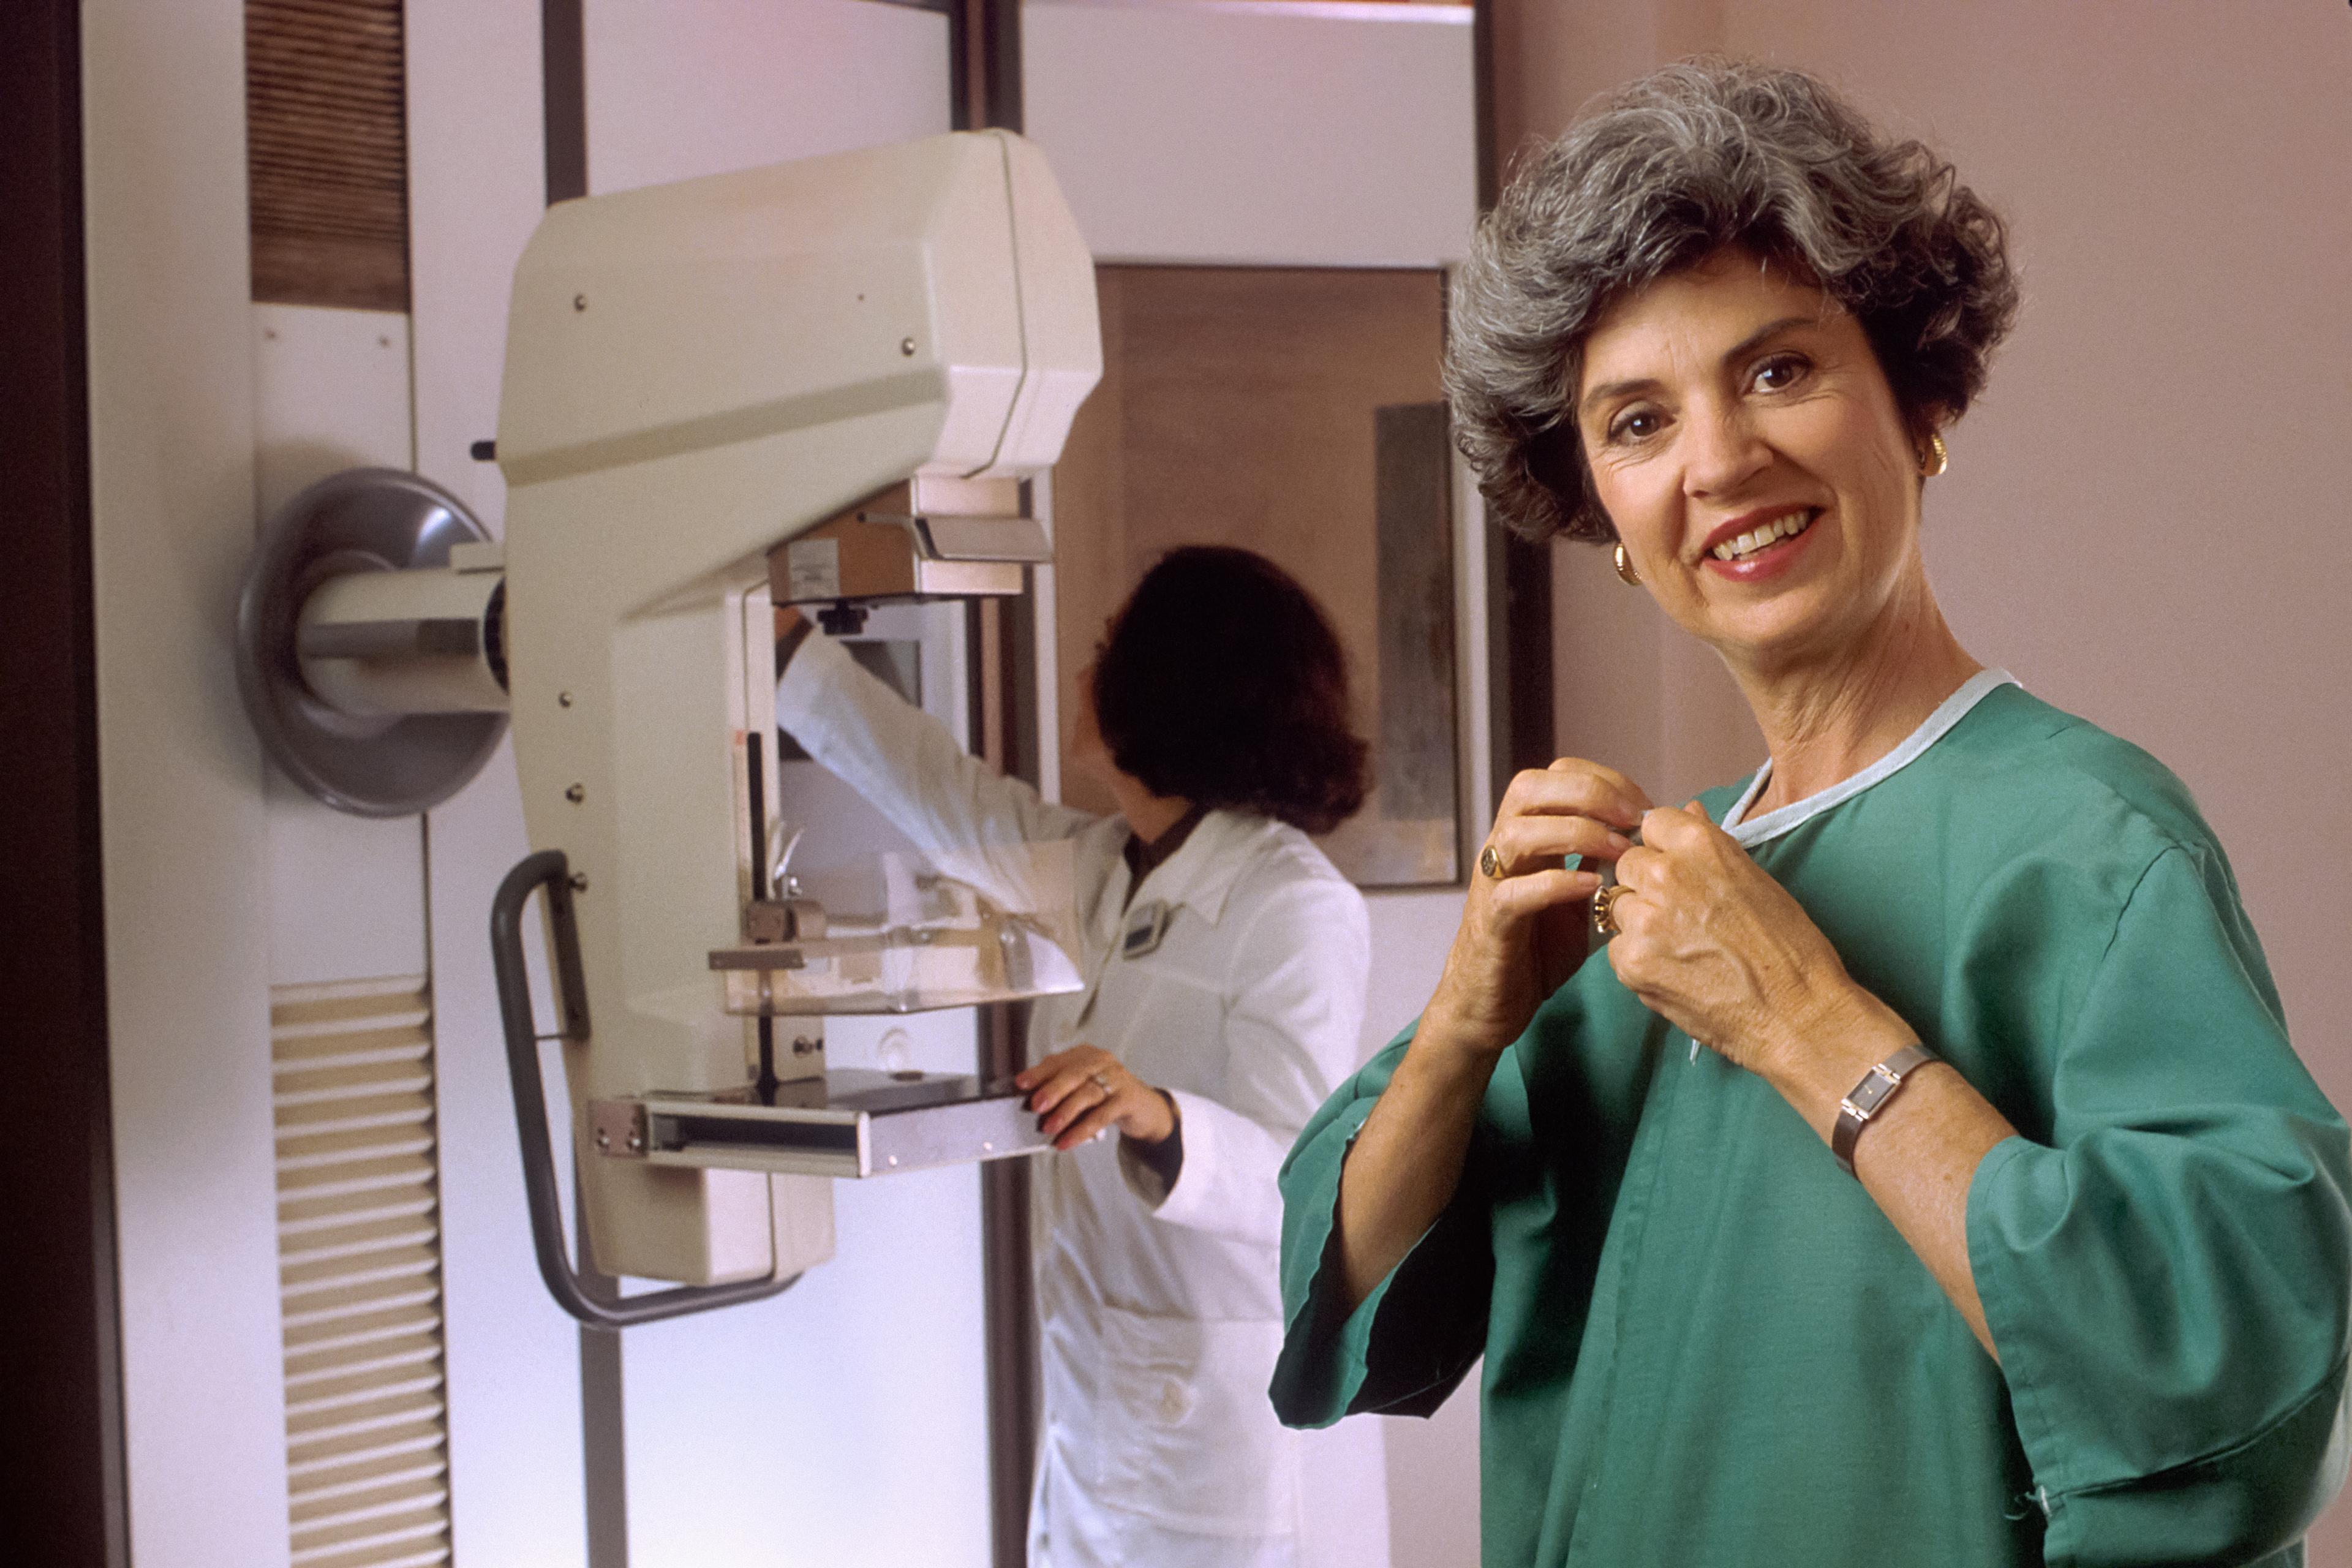 Mammografia - kiedy wykonuje się to badanie i jak się przygotować?  Mammografia – jak wygląda samobadanie piersi? Mammografia – badanie przesiewowe raka piersi 